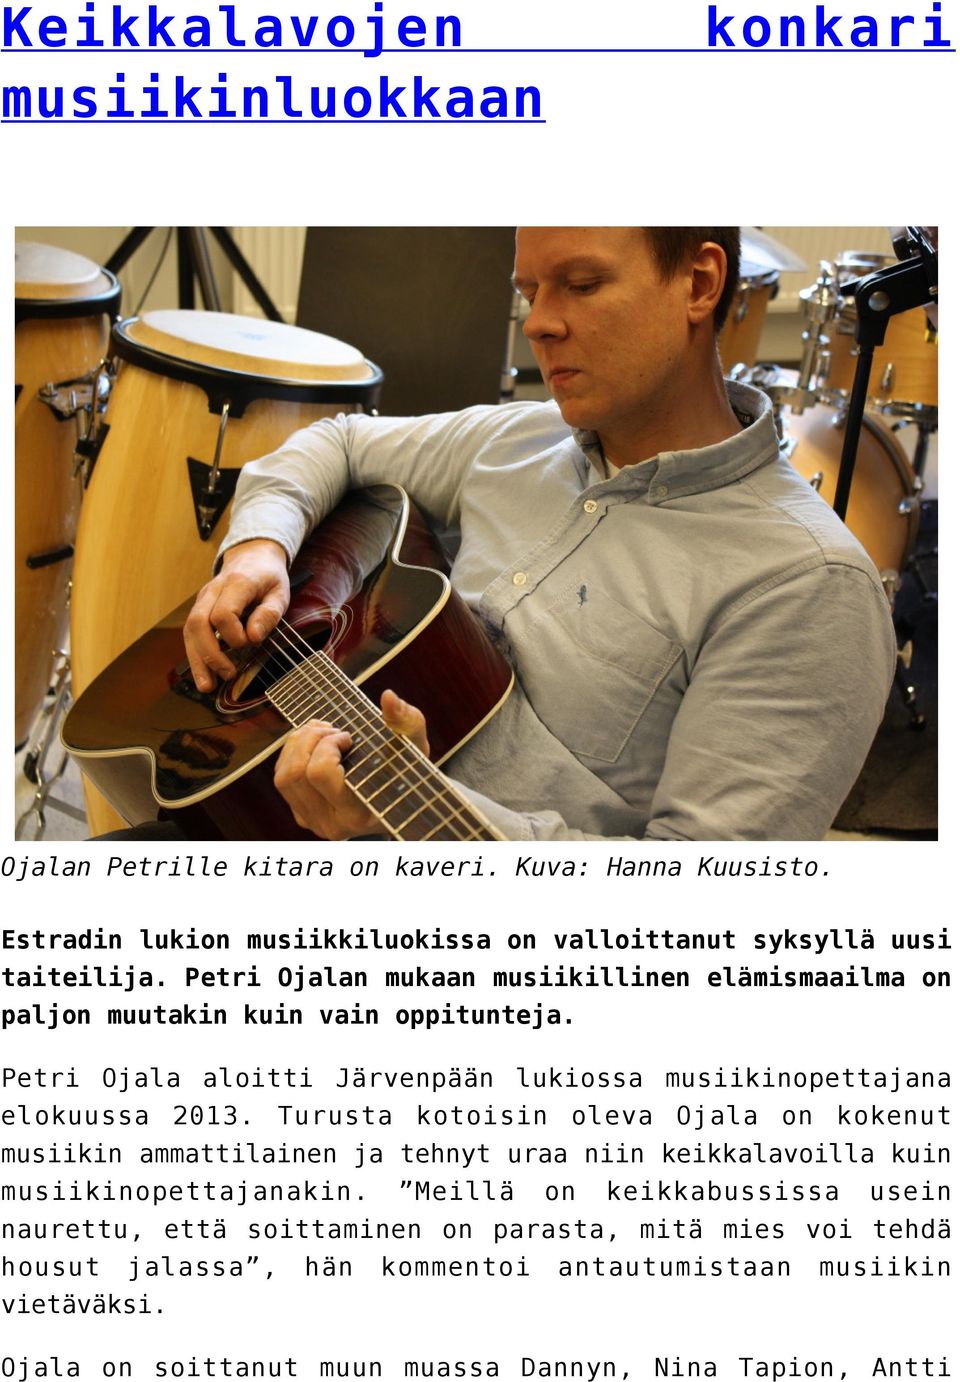 Turusta kotoisin oleva Ojala on kokenut musiikin ammattilainen ja tehnyt uraa niin keikkalavoilla kuin musiikinopettajanakin.